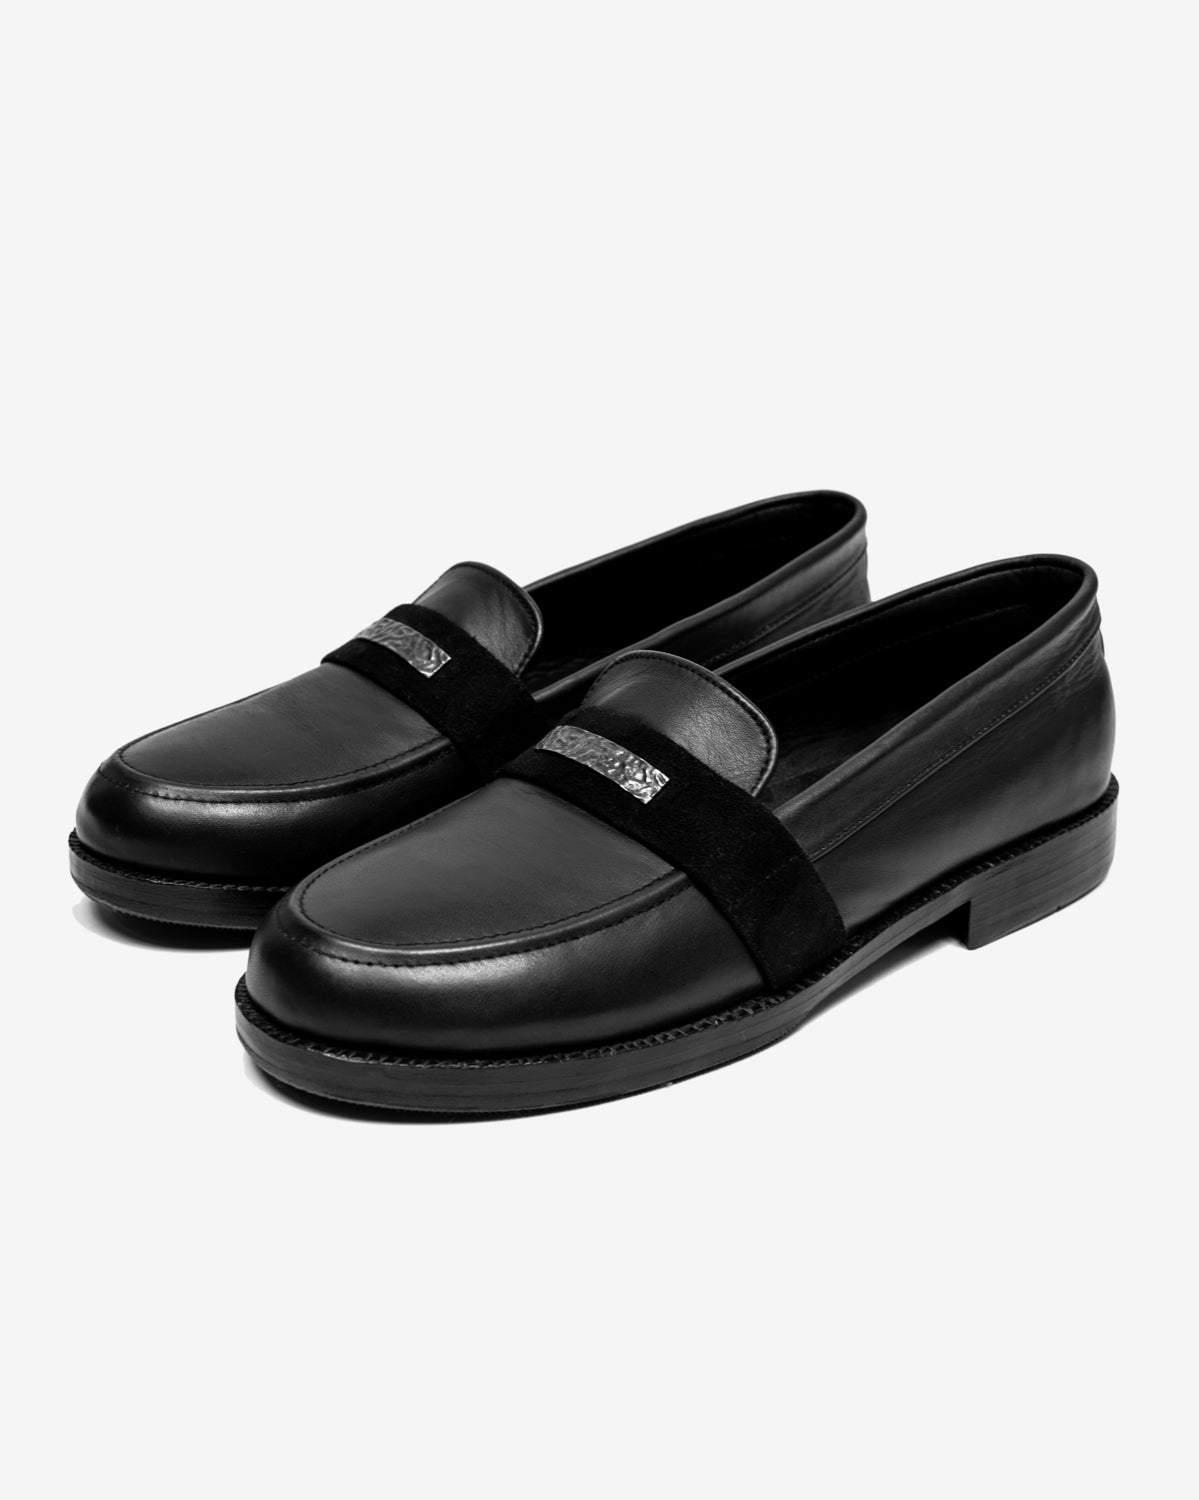 Leather Loafer Black / 43 (Mens 9, 9.5)